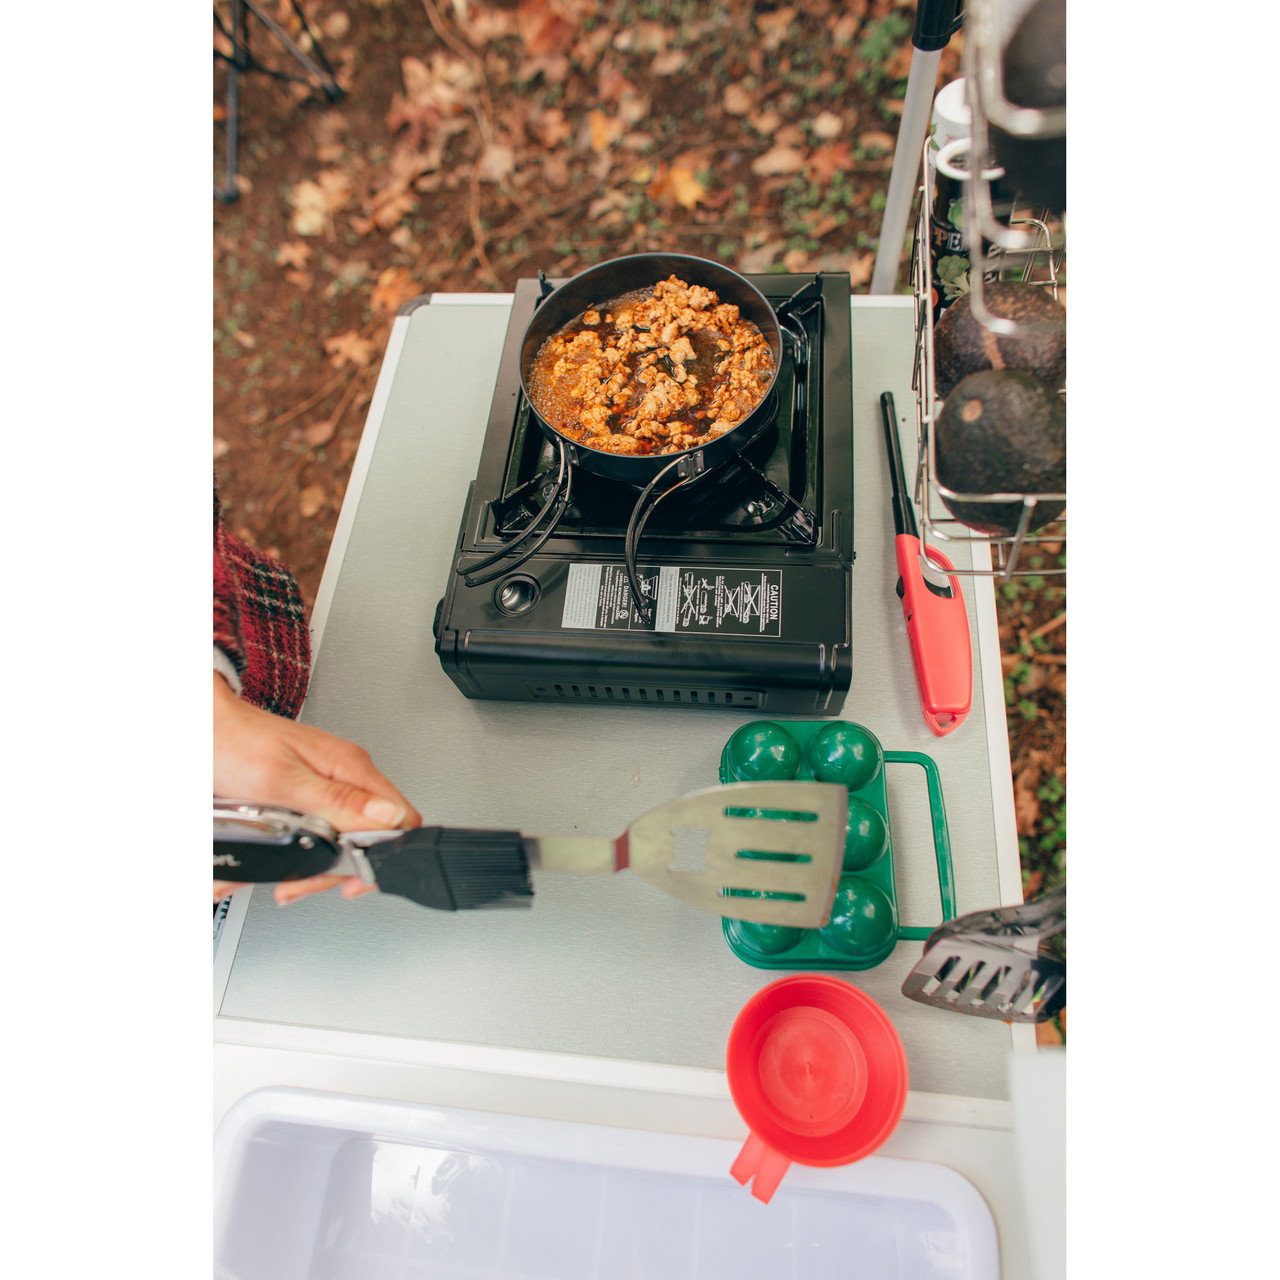 Choice Single Burner Portable Butane Stove with Fry Pan